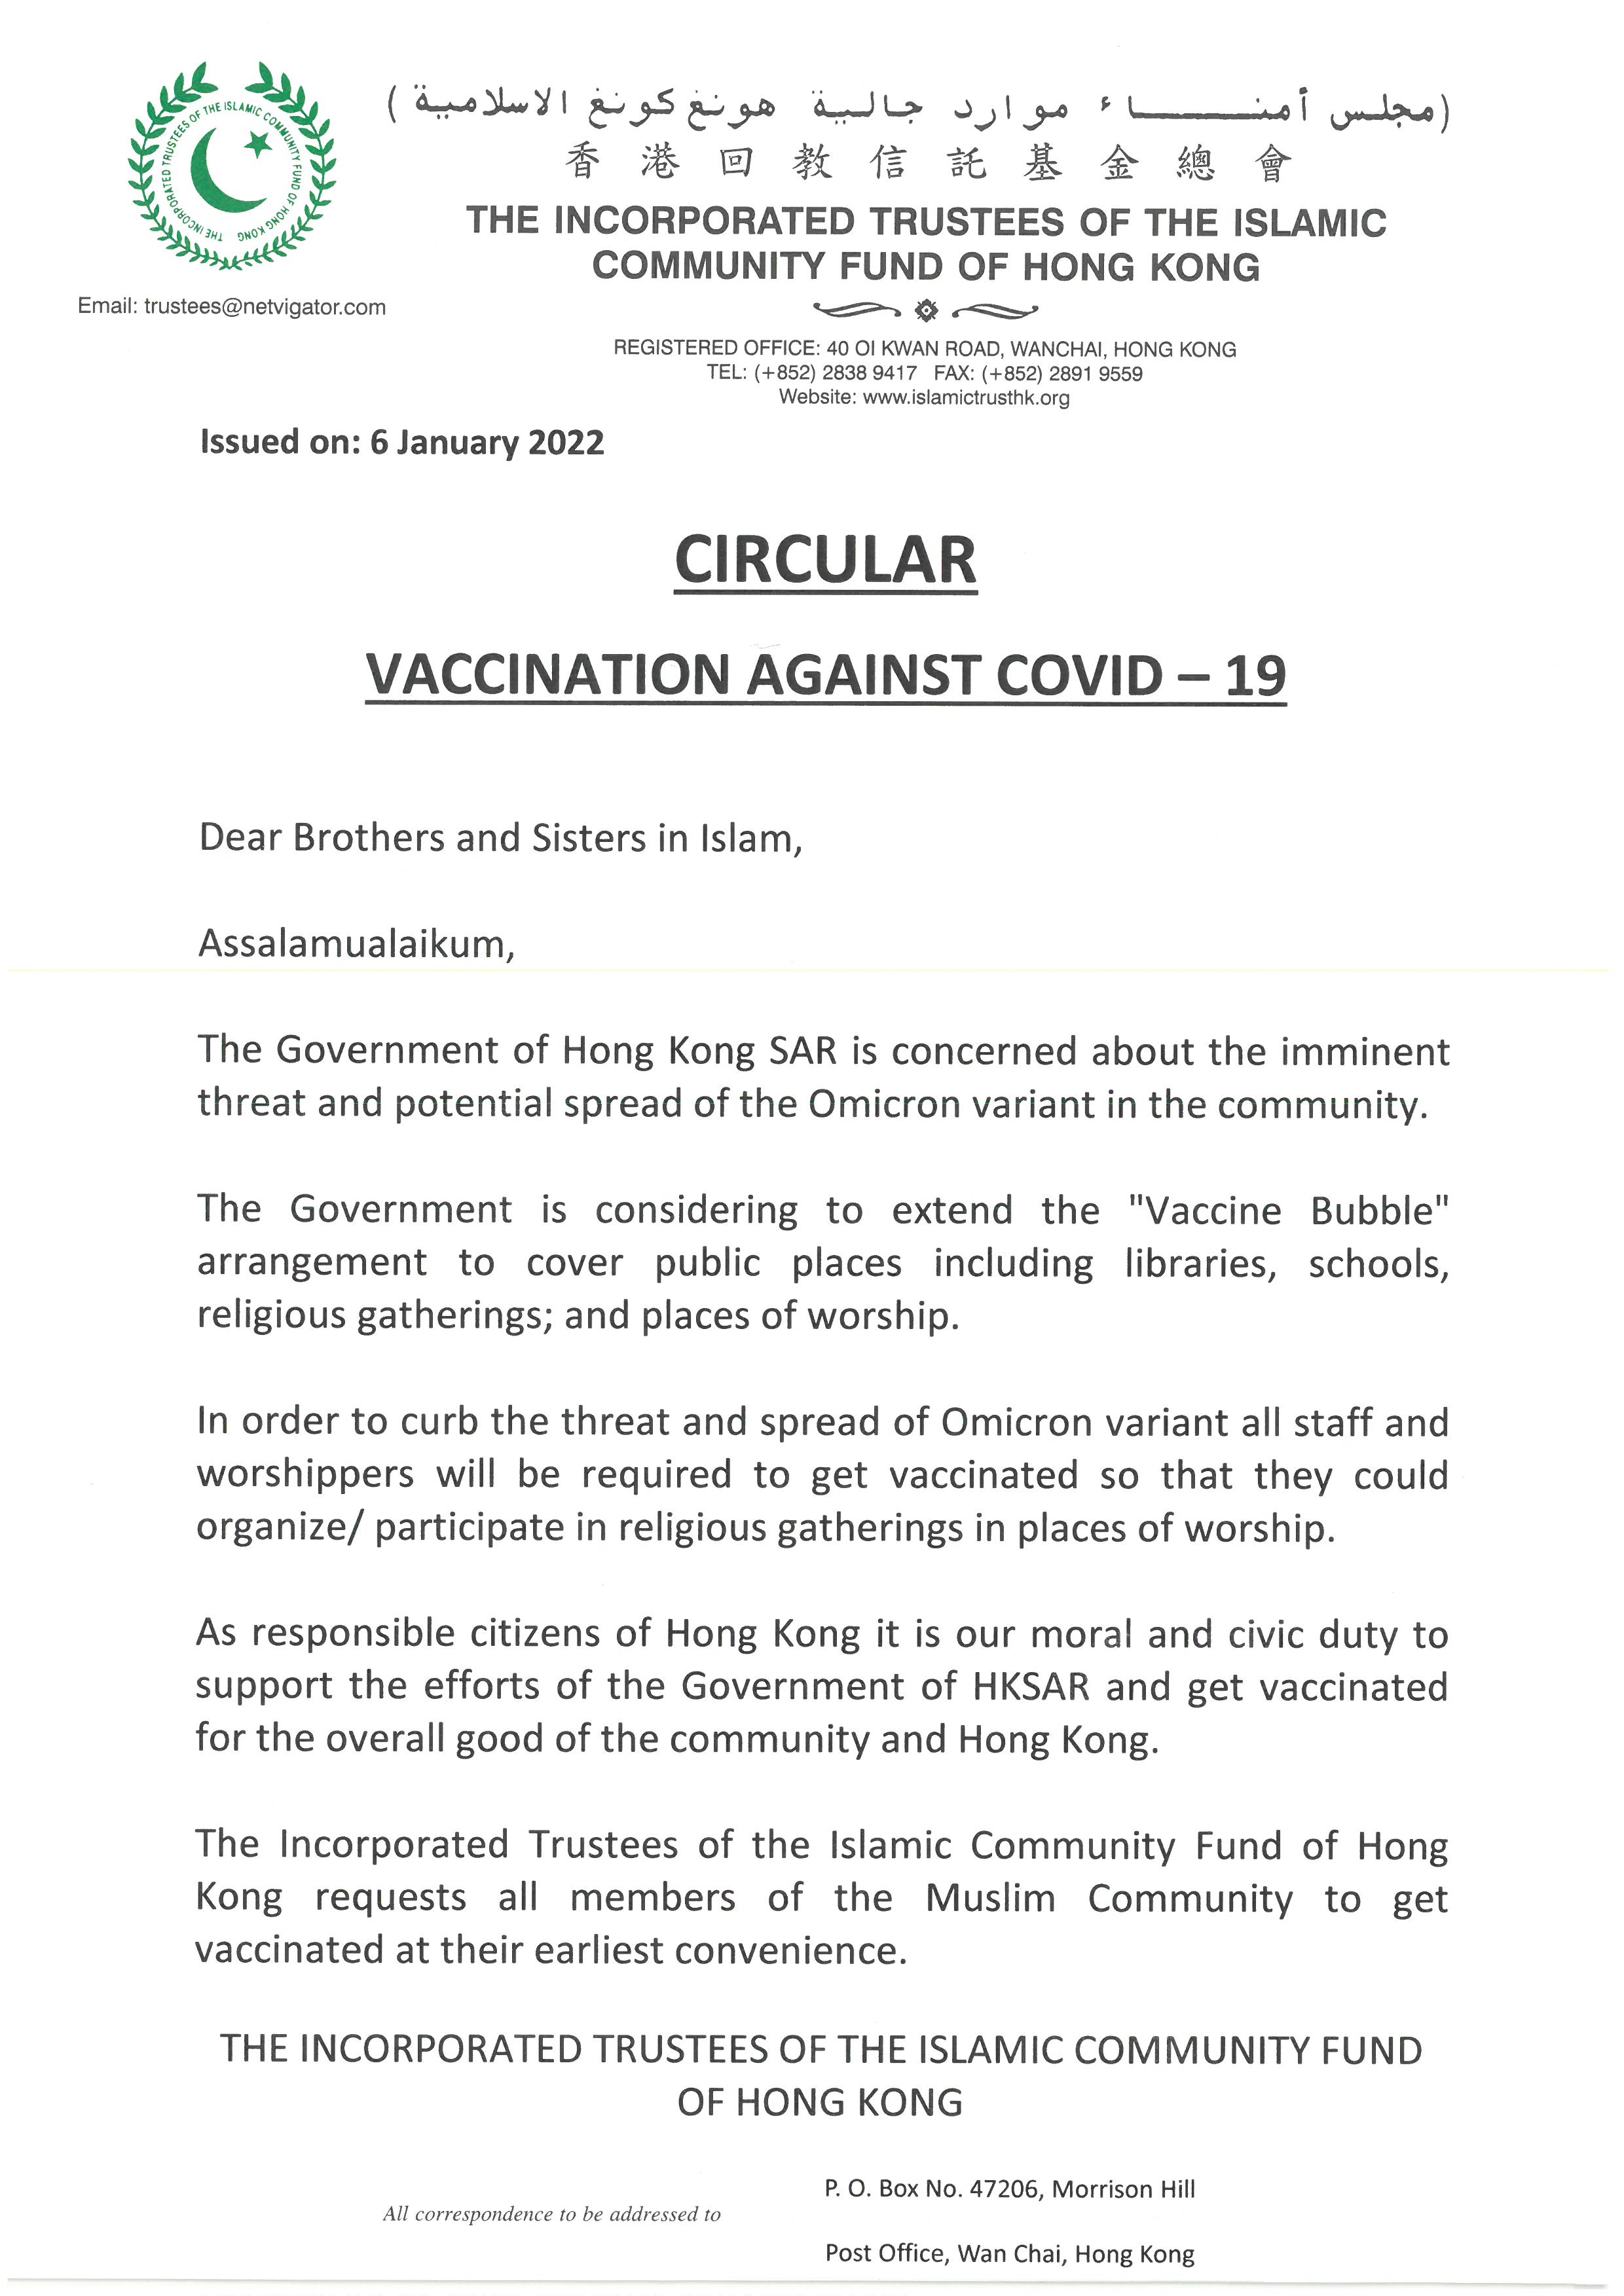 Circular Covid Vaccination Jan 2022